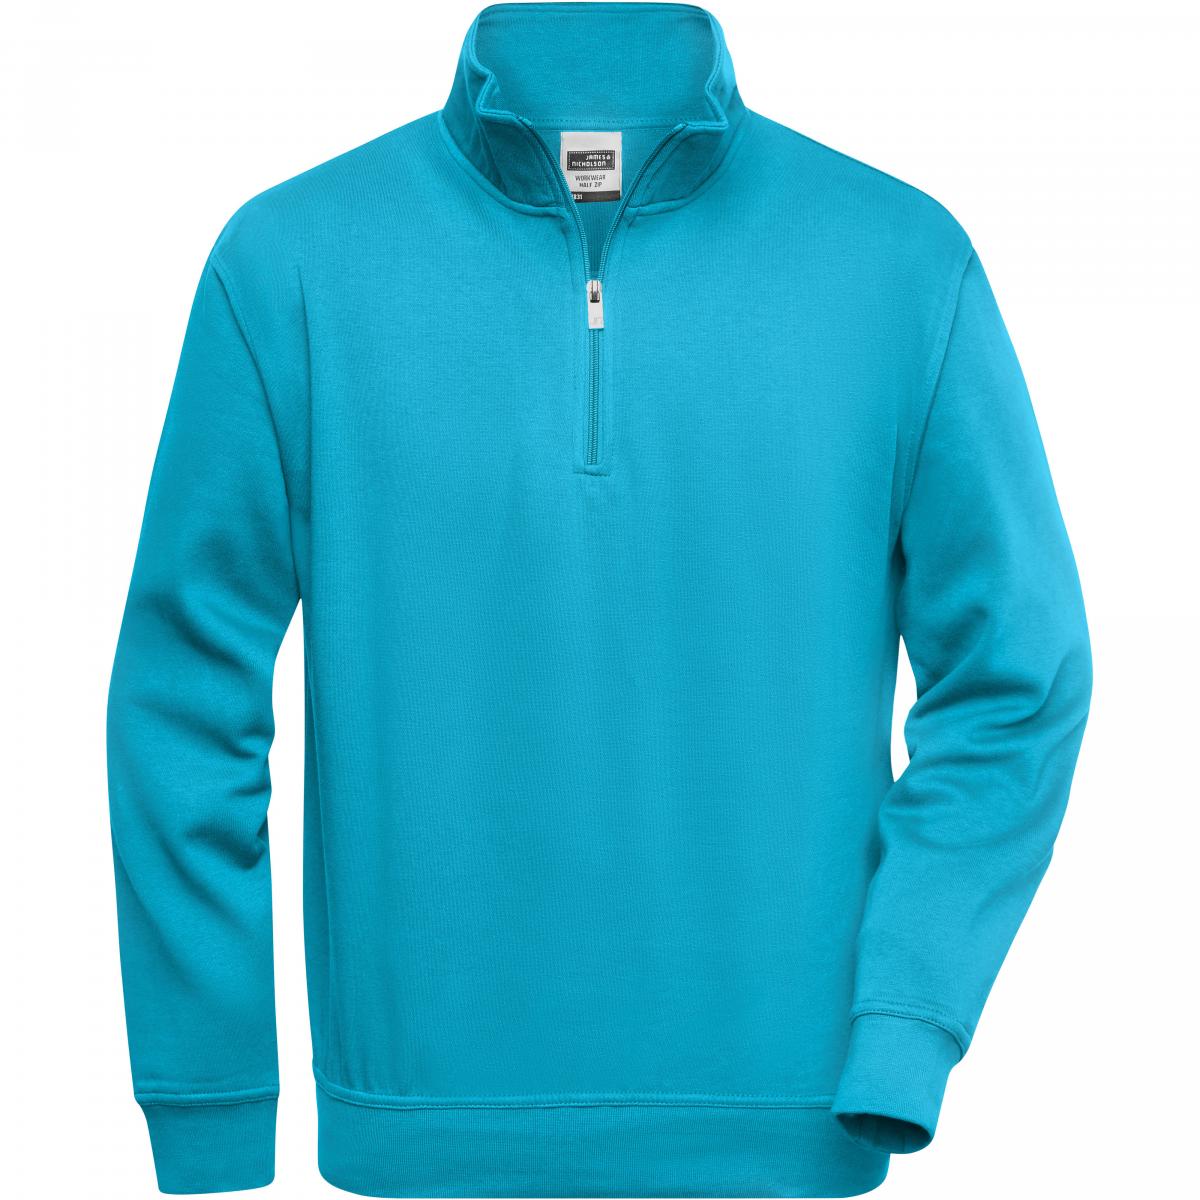 Hersteller: James+Nicholson Herstellernummer: JN831 Artikelbezeichnung: Workwear Half Zip Sweatshirt +Waschbar bis 60 °C Farbe: Turquoise